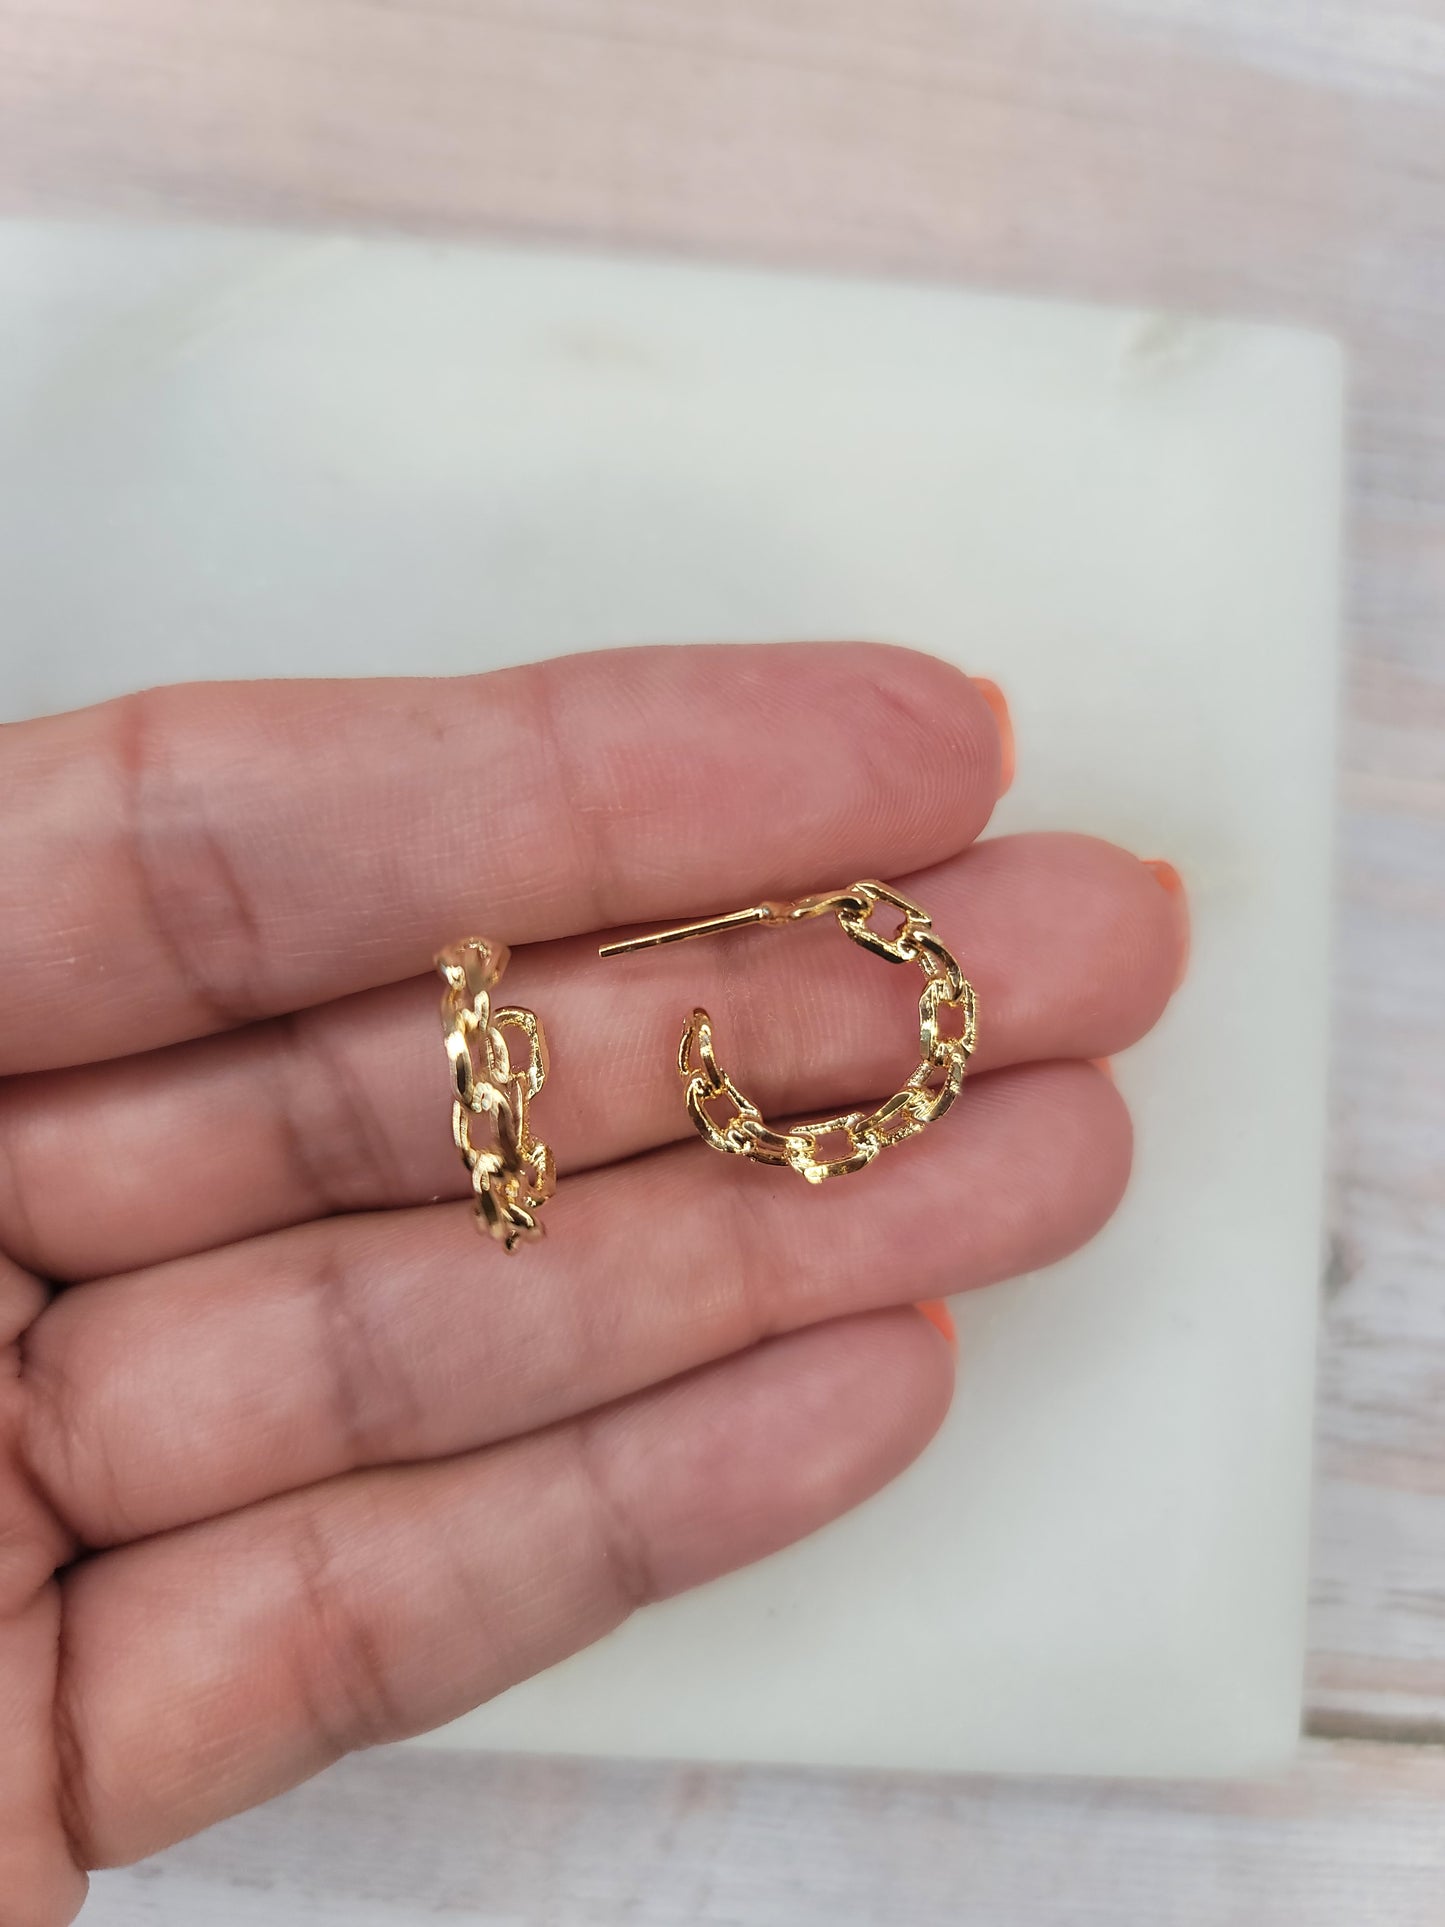 Chain Link Earrings